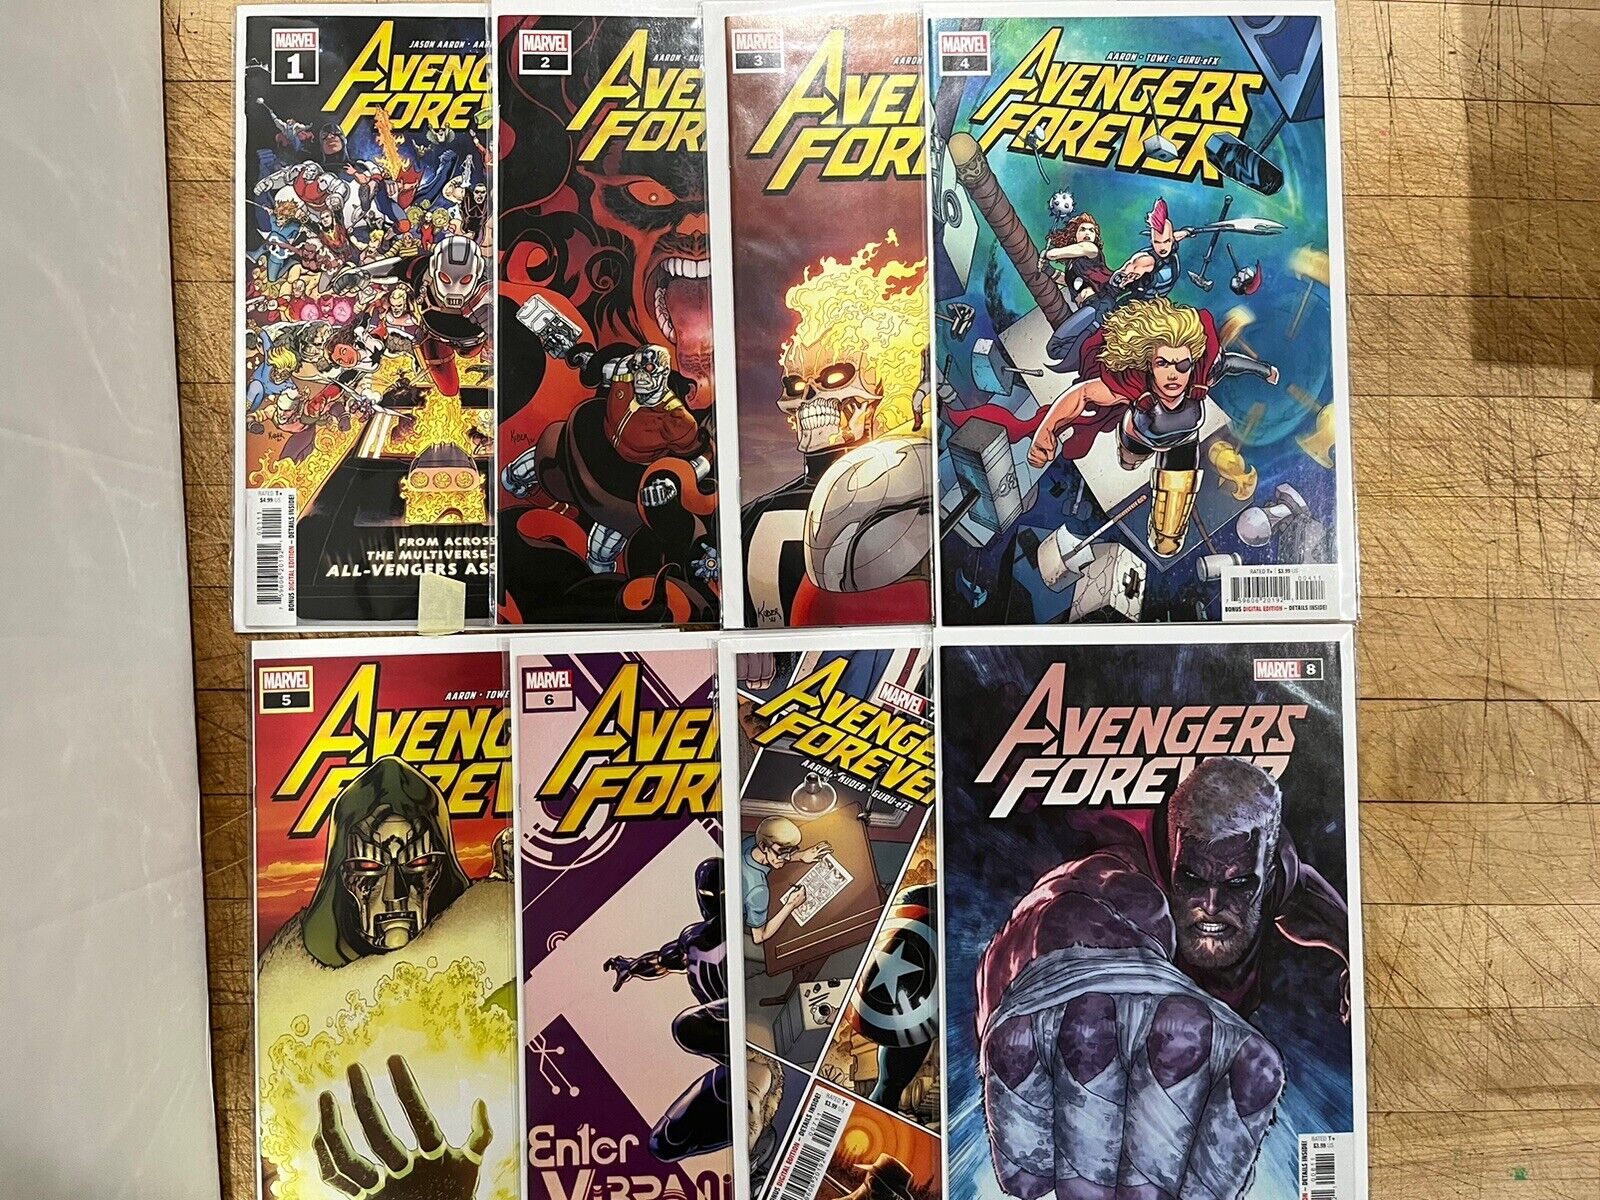 Avengers Forever #1 2 3 4 5 6 7 8 Marvel Comics Set Run